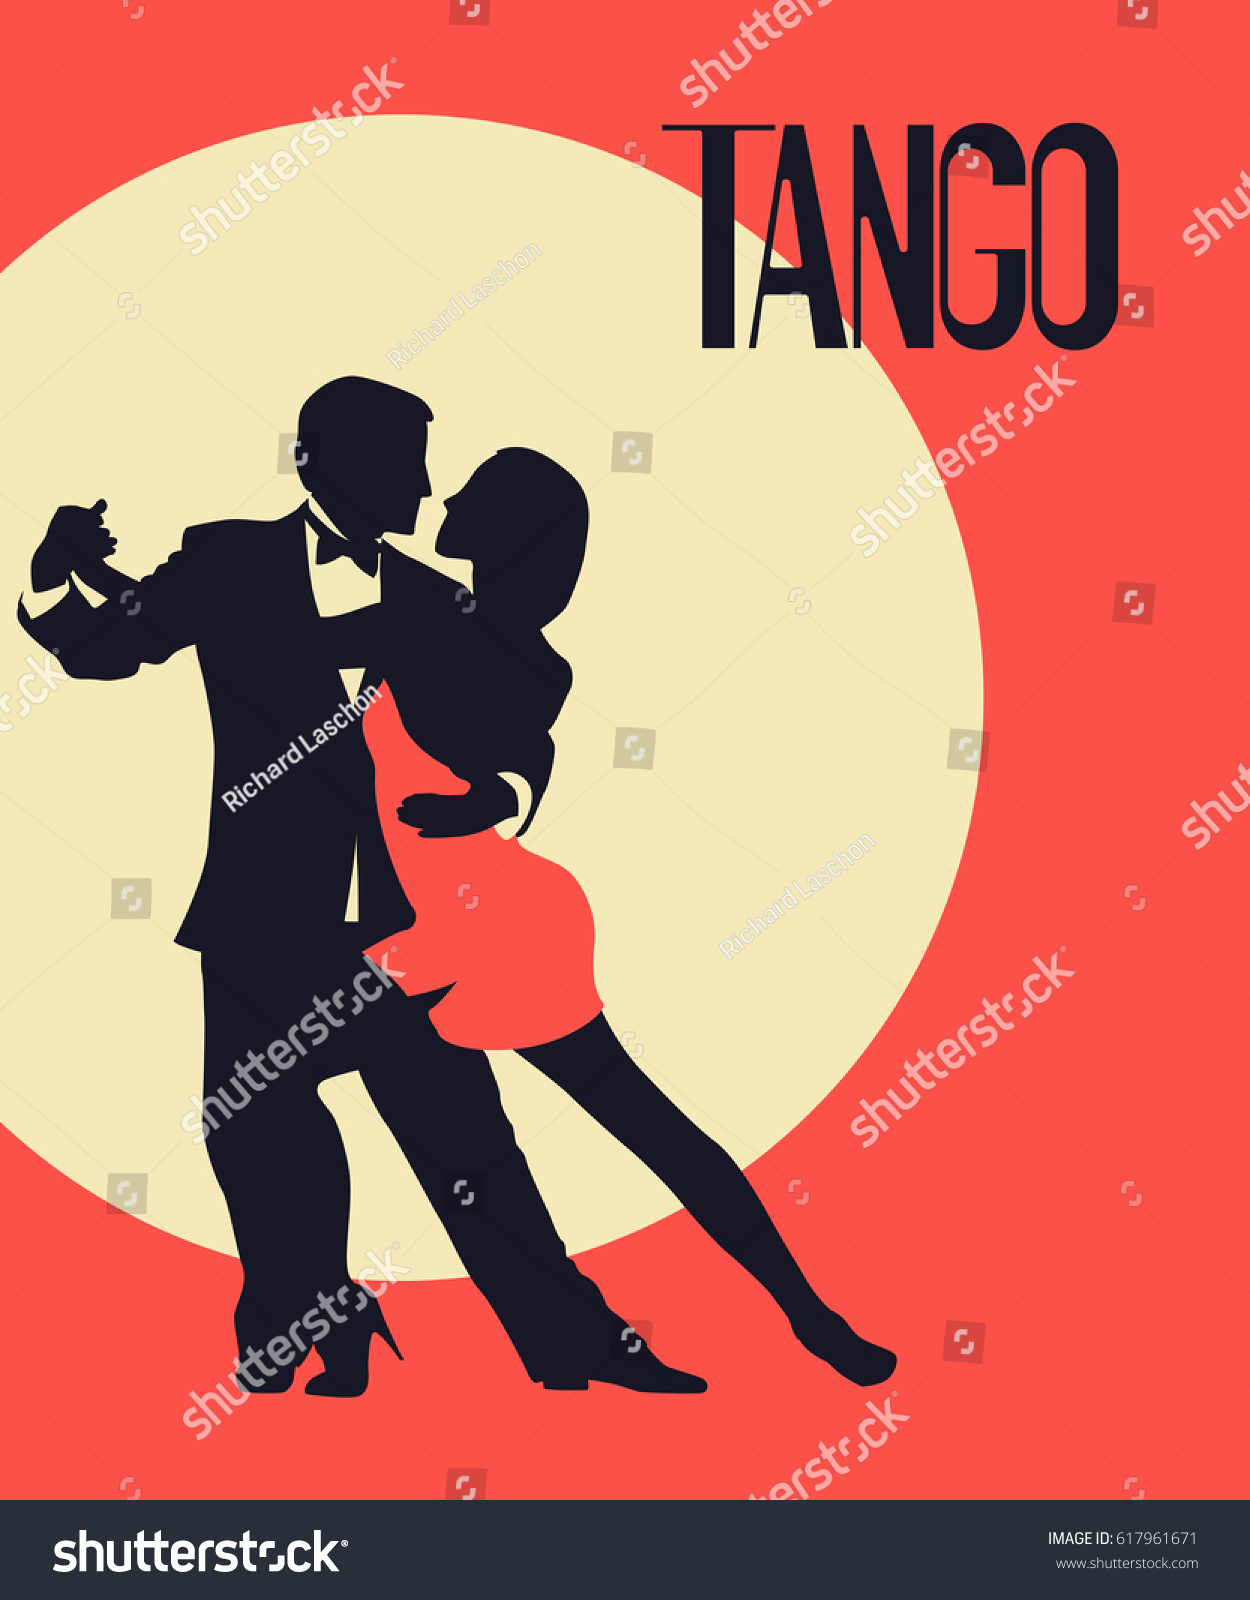 N A Pintura al óleo Abstracta Cartel de Baile Tango Retro decoración del hogar Arte de la Pared Imagen Encantadora Mujer Fiesta Baile Arte 40x60 cm 